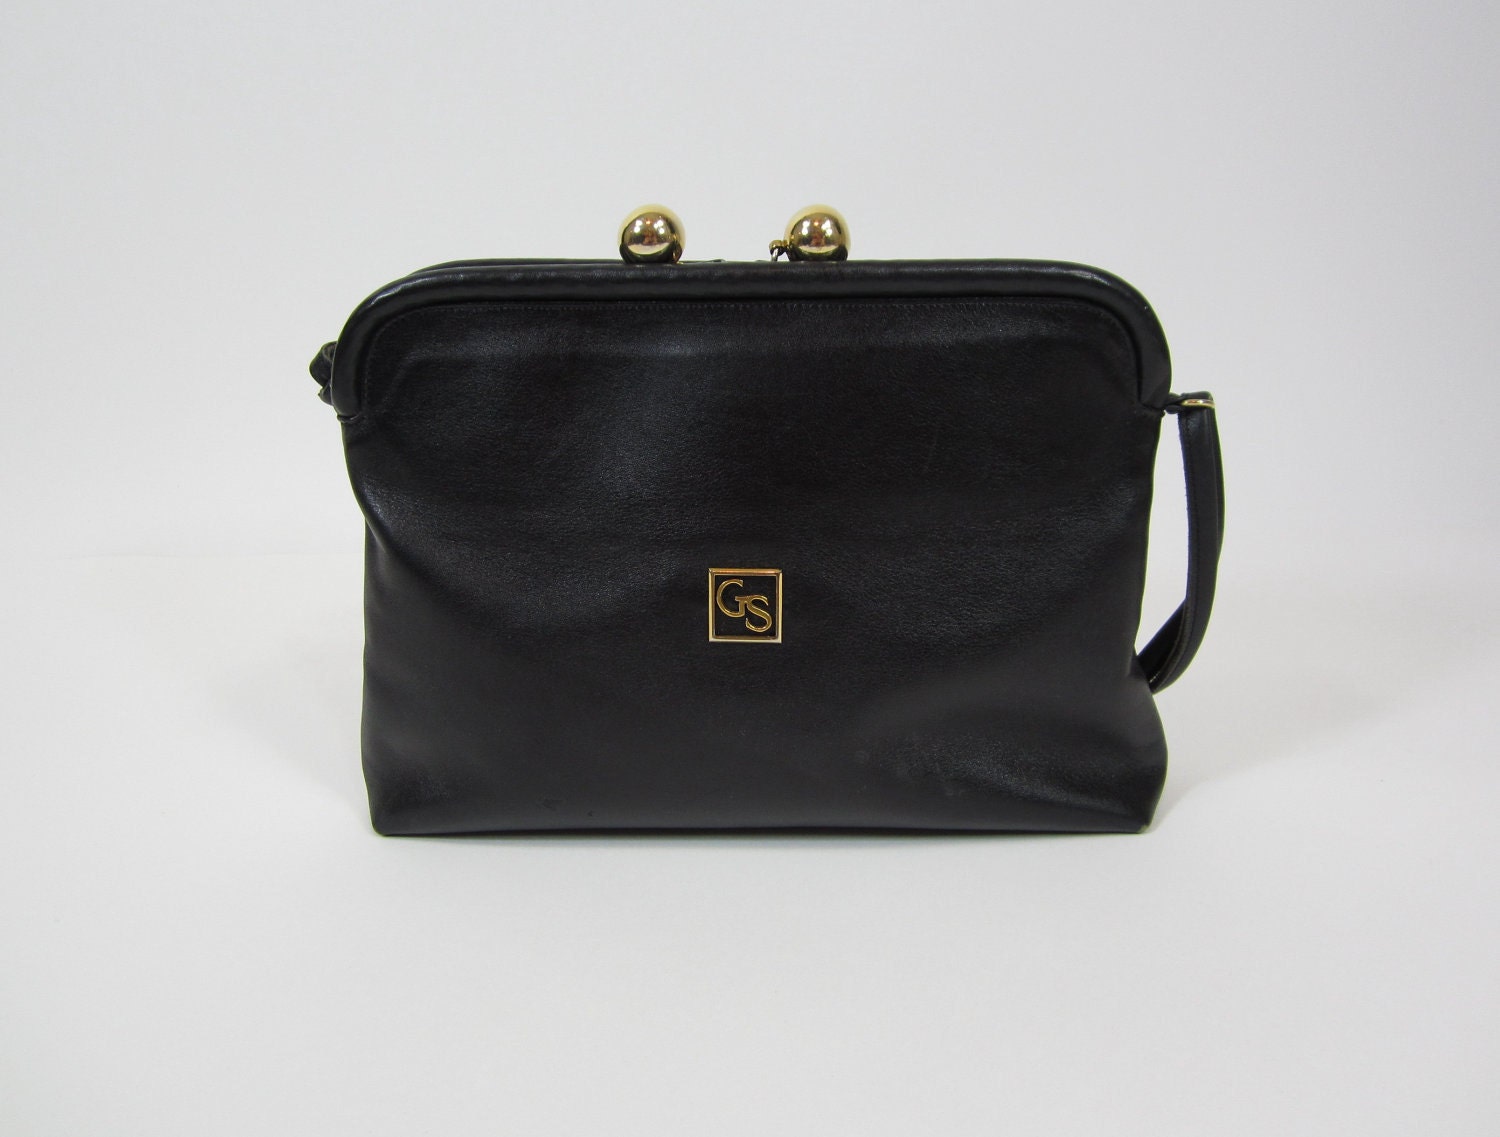 Vintage 1960s Black Gucci Purse Handbag by FabVintage on Etsy